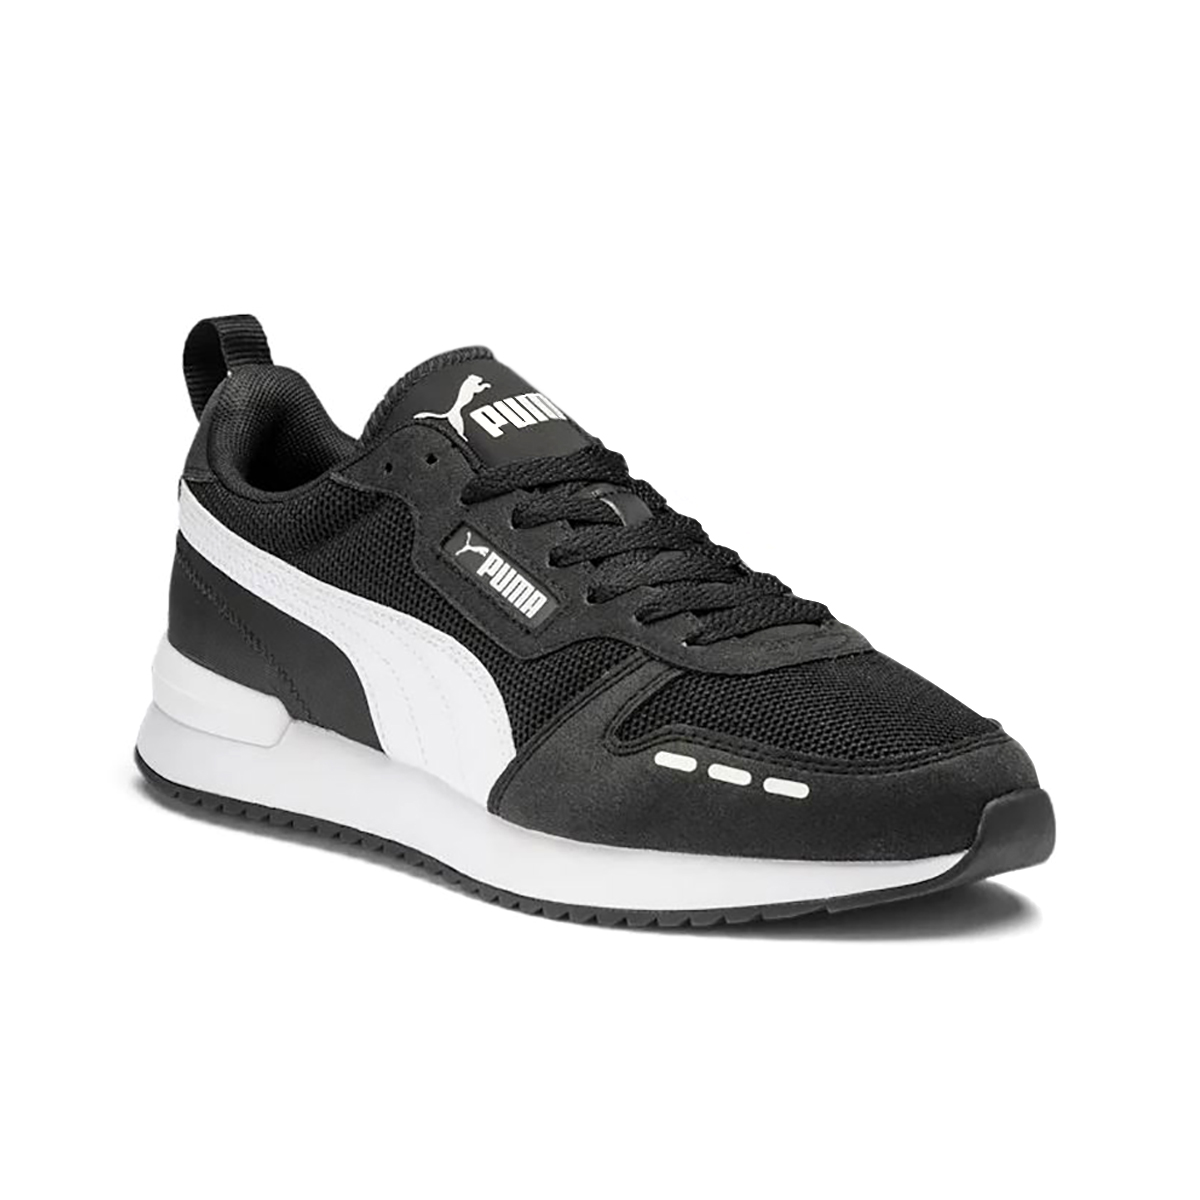 Puma Men's R78 Puma Black/Puma White Sneakers - WOOKI.COM